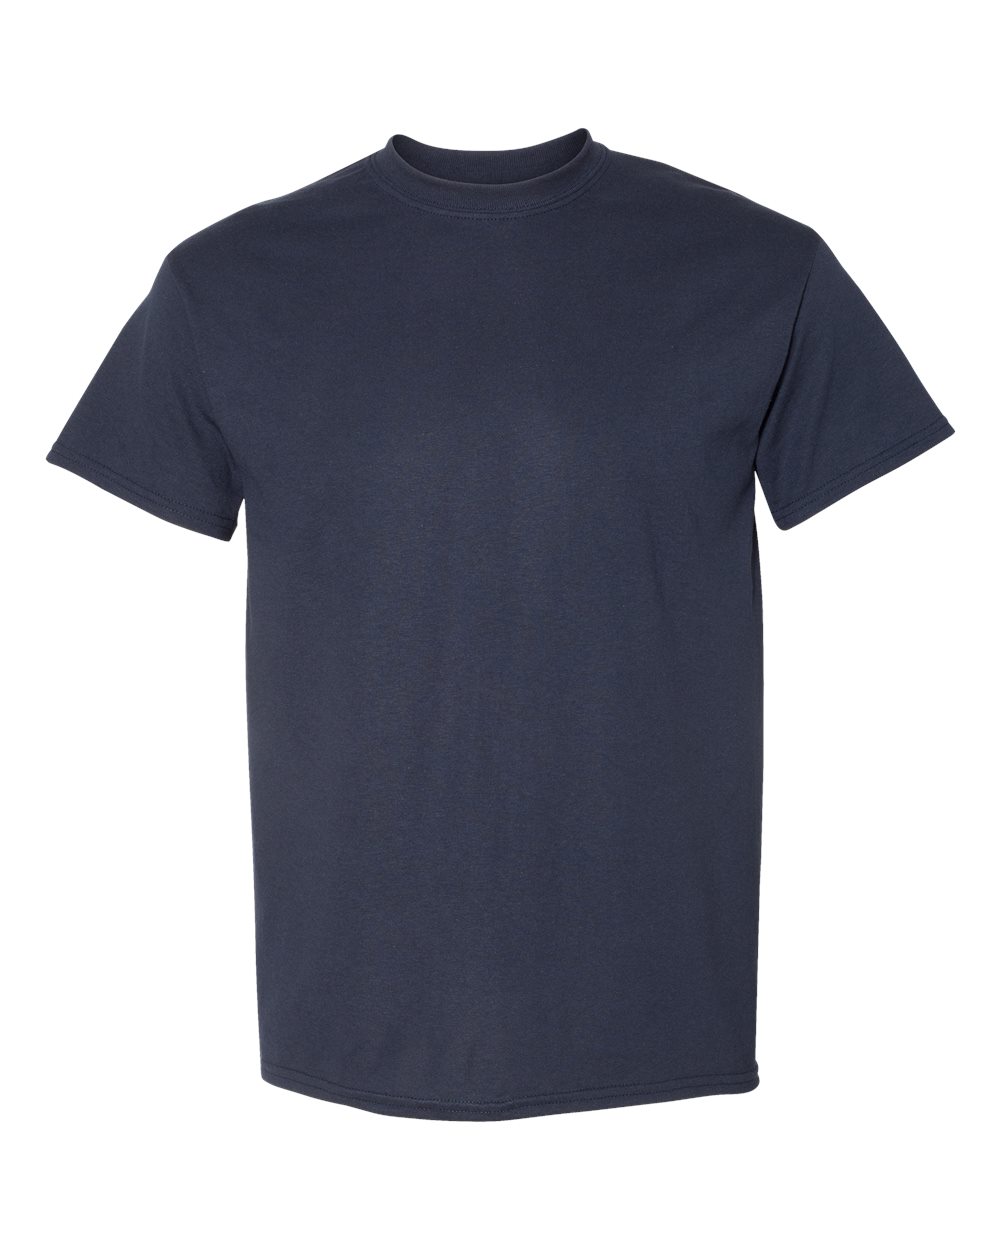 Gildan 8000 DryBlend T-Shirt :: Sport Dark Navy, Size XL